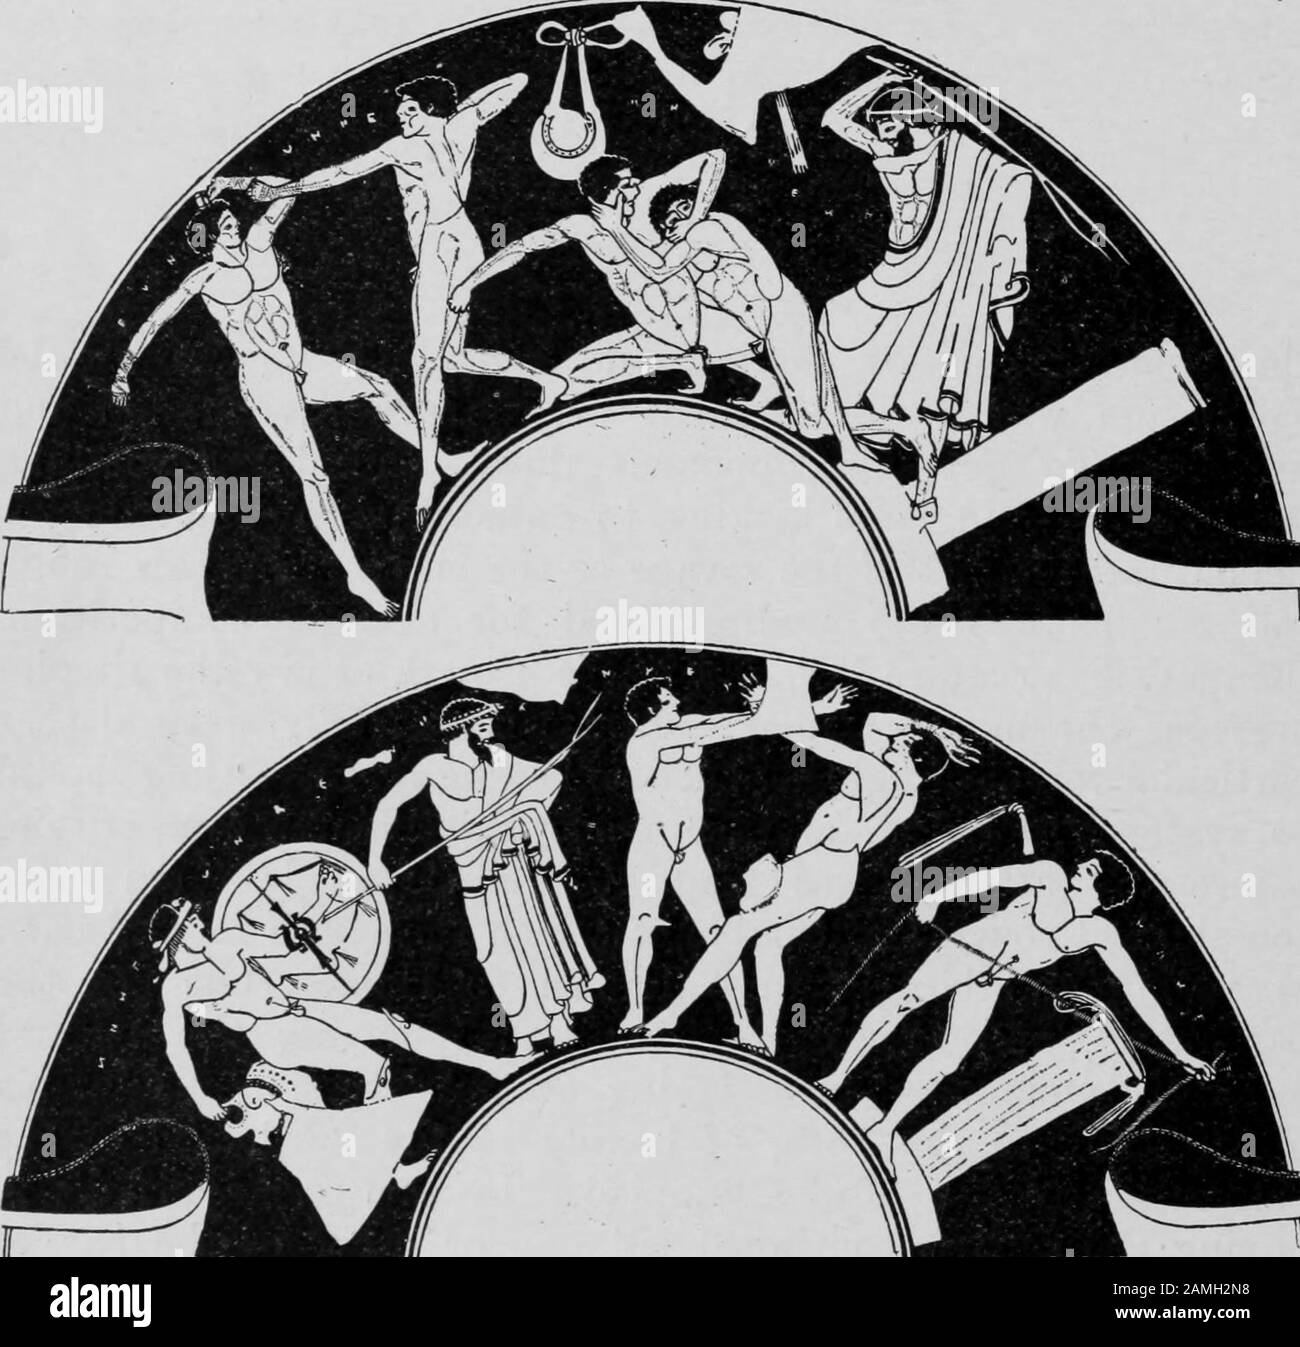 Image présentant la lutte et la boxe des hommes grecs, tirée du livre « Greek Athletic Sports and Festivals » de l'auteur E. Norman Gardiner, publié par Macmillan and Co, 1910. Archives Internet De Courtoisie. () Banque D'Images